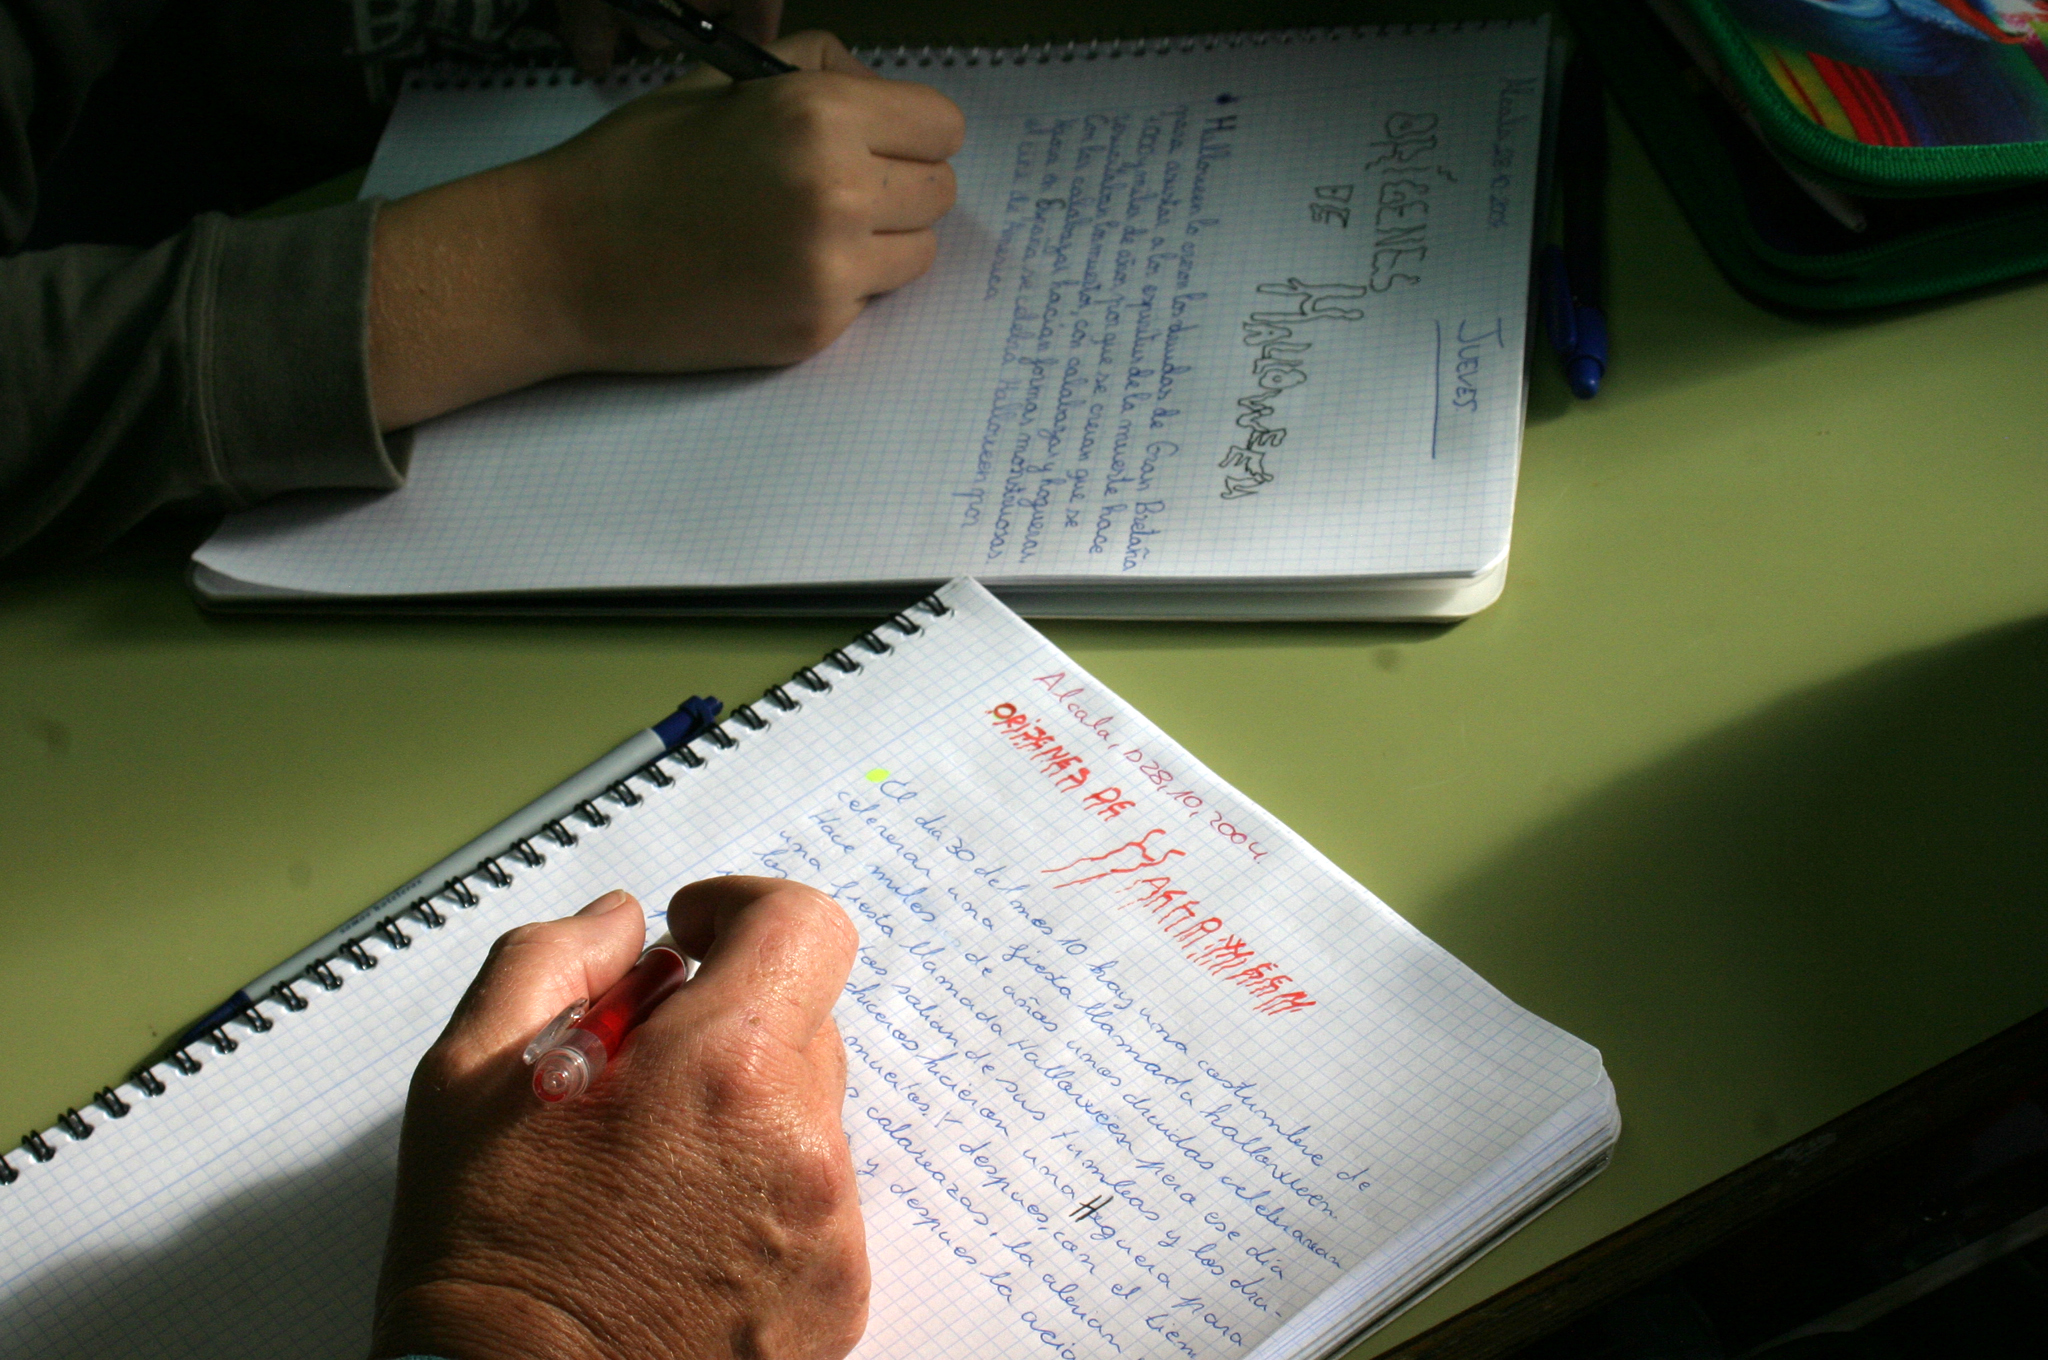 La imagen muestra las manos de dos personas sobre una mesa escribiendo sobre sendas libretas